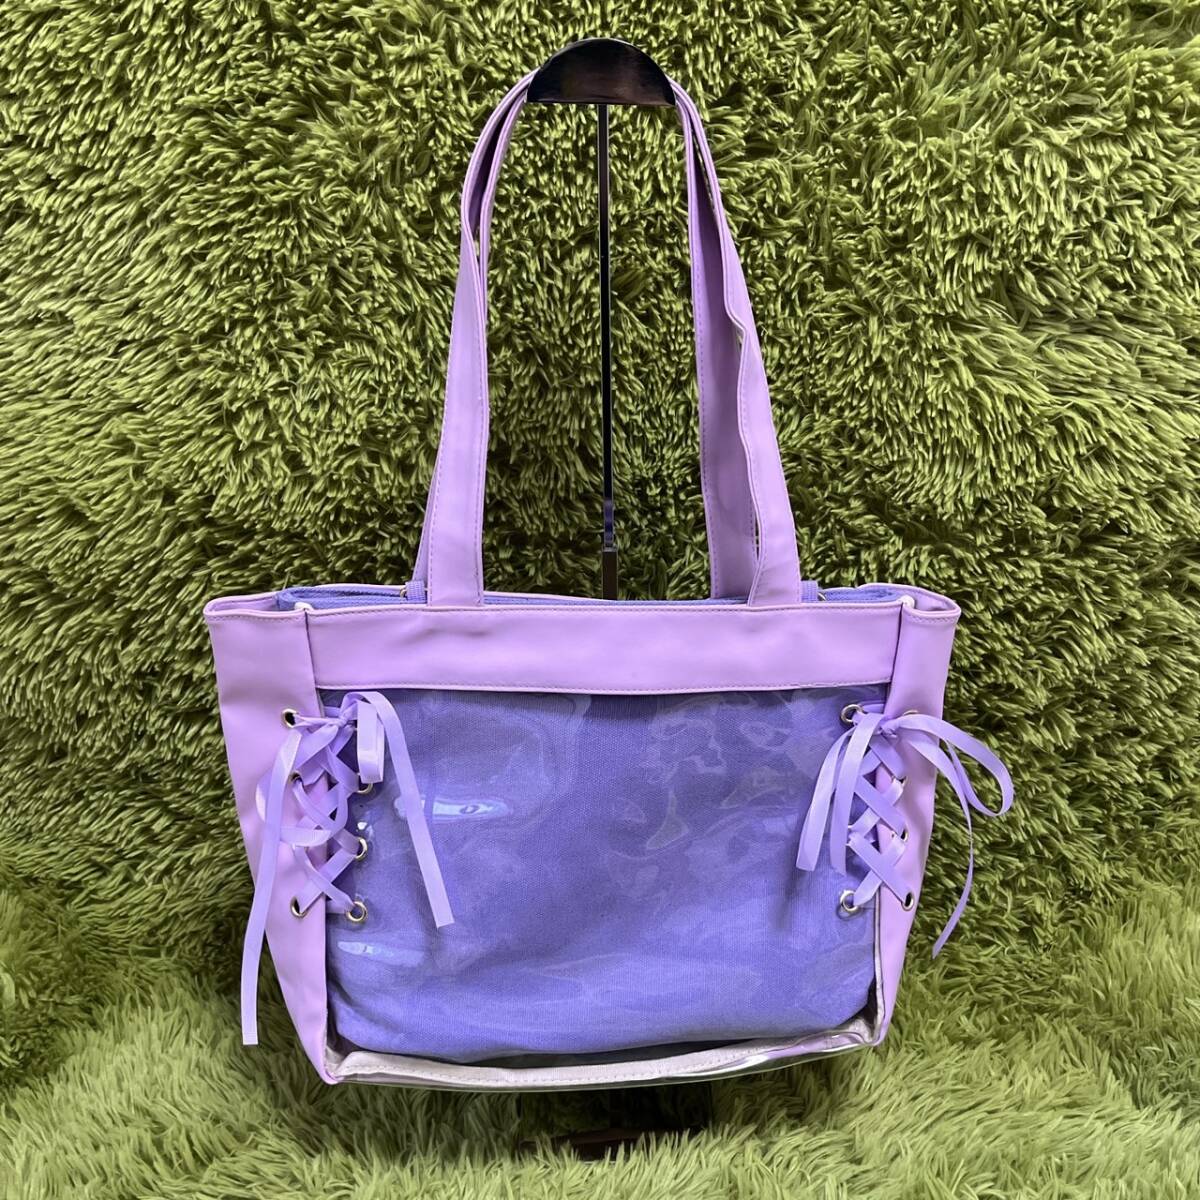  женский   сумка для покупок  ... ... ... ... сумка   чистый  сумка  PU кожа   лента   симпатичный   модный    фиолетовый  N590